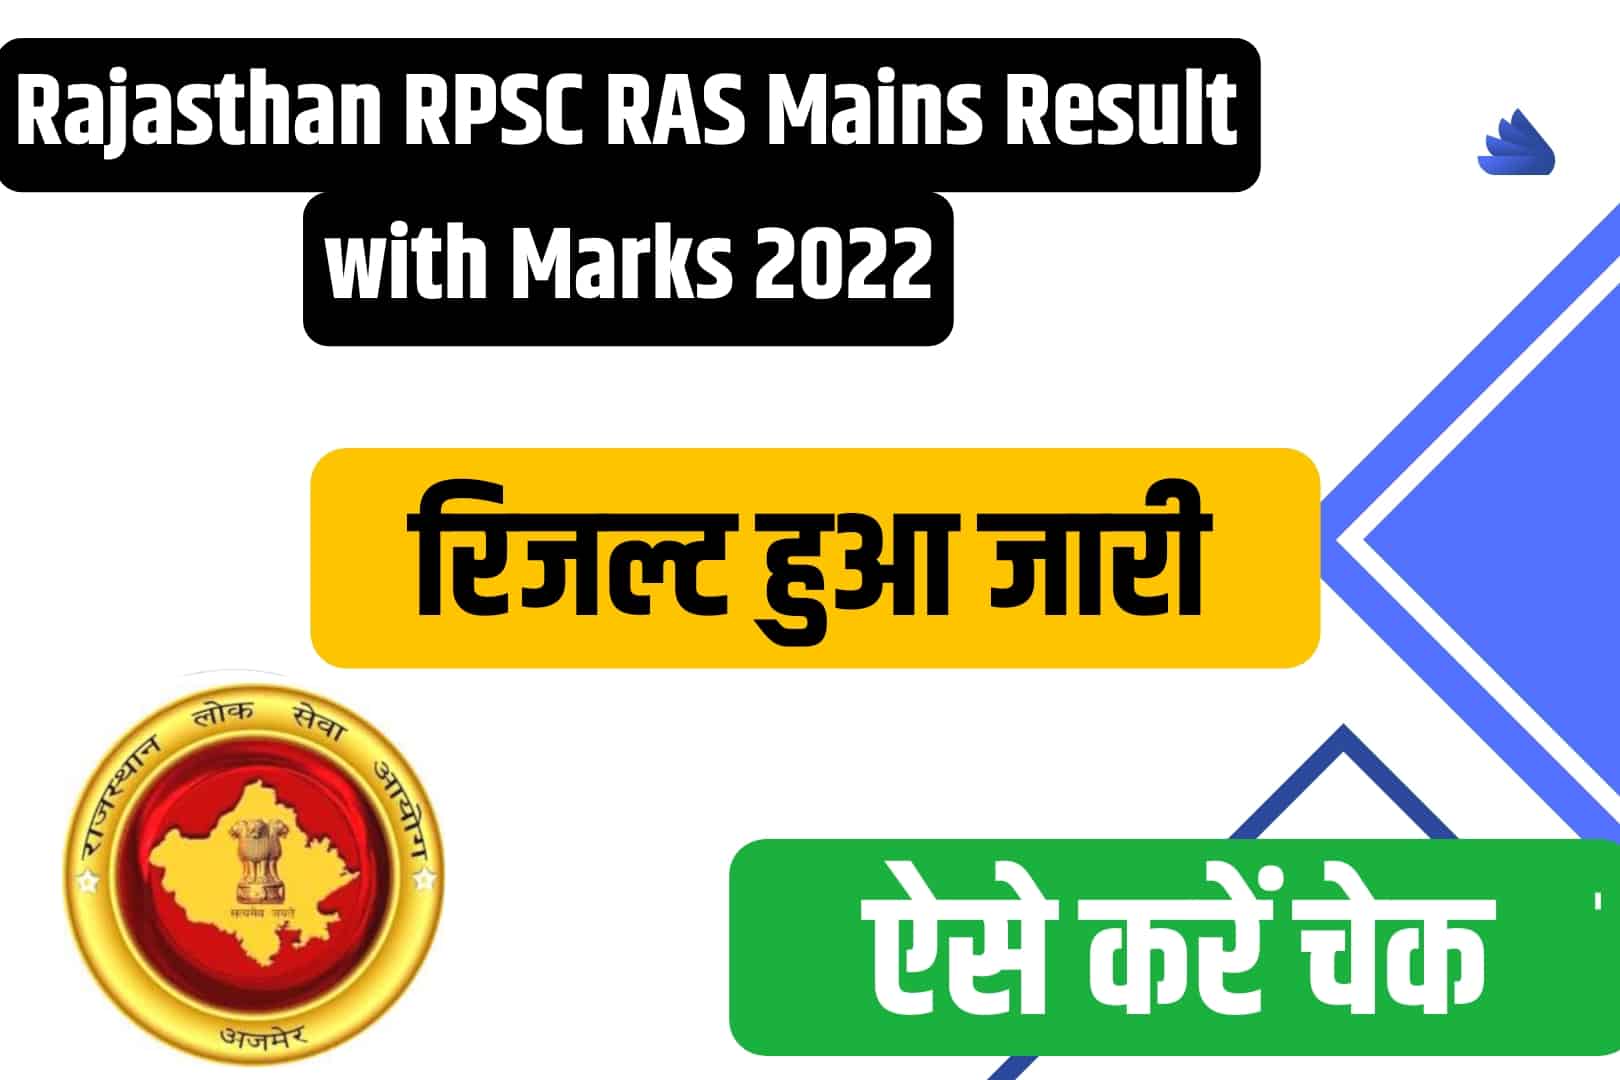 Rajasthan RPSC RAS Mains रिजल्ट और अंकपत्र 2022